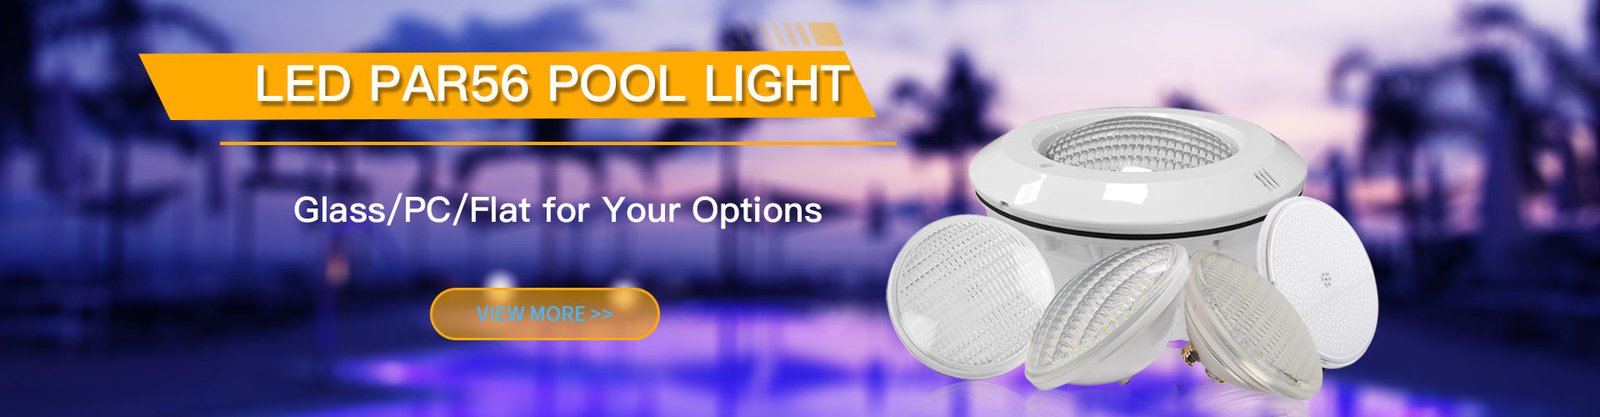 LED PAR56 Pool Light